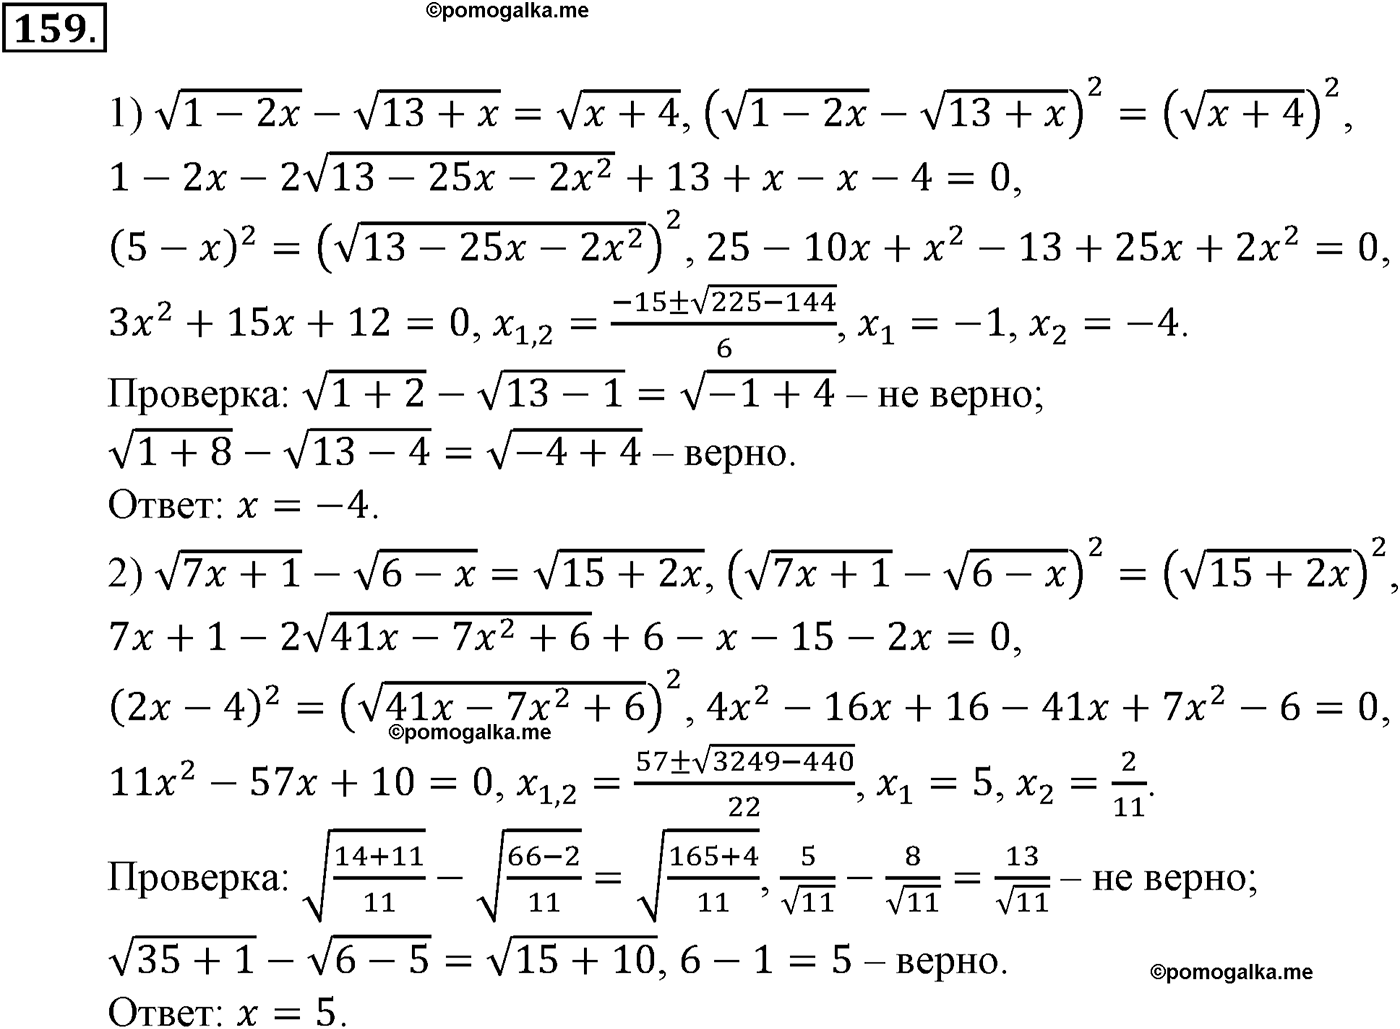 разбор задачи №159 по алгебре за 10-11 класс из учебника Алимова, Колягина